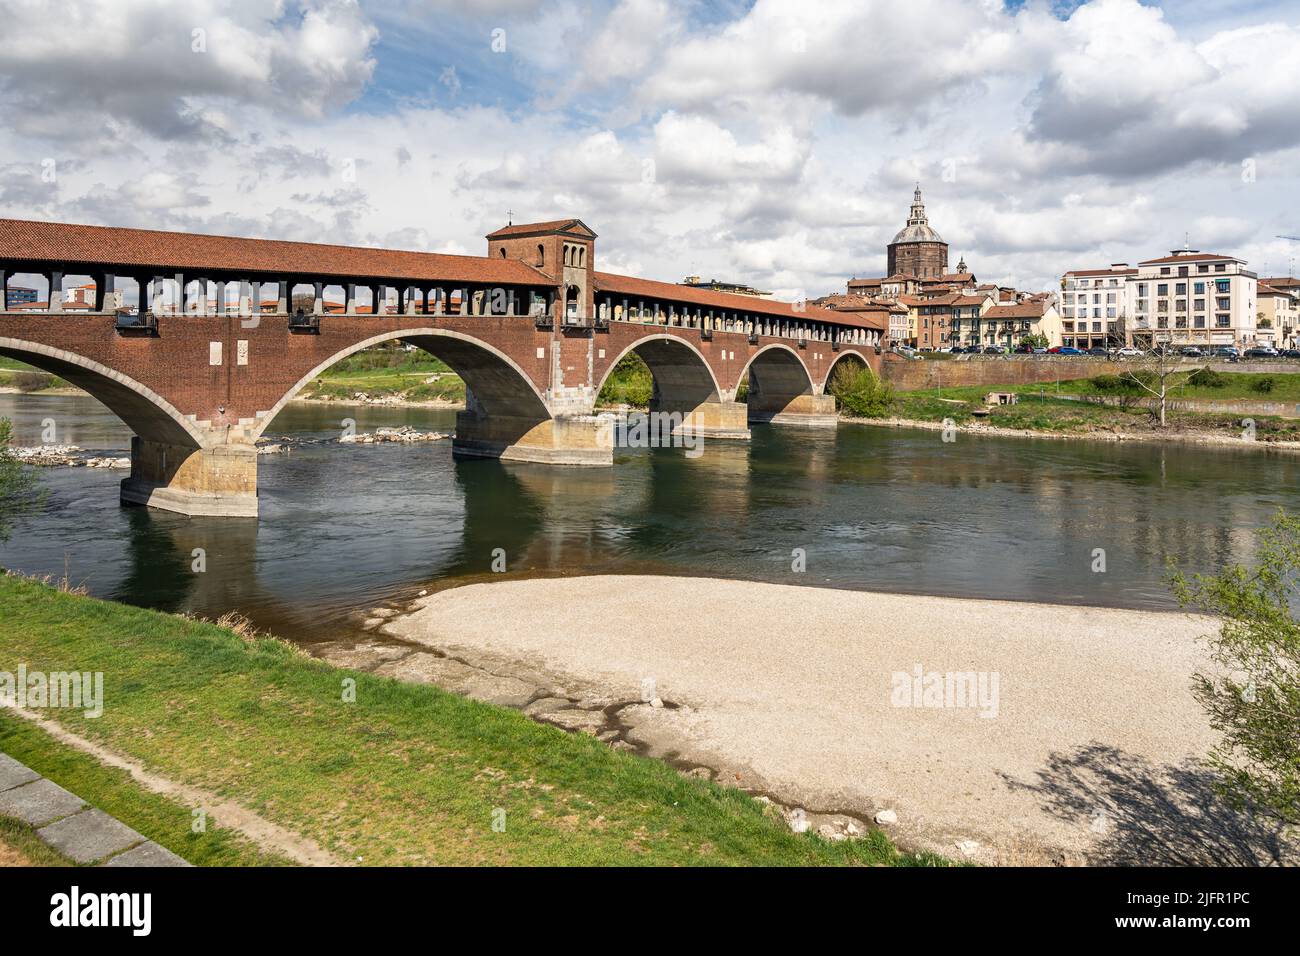 Blick auf Ponte Coperto (überdachte Brücke), die den Fluss Tessin überquert, ein berühmtes Wahrzeichen von Pavia, Lombardei, Italien Stockfoto